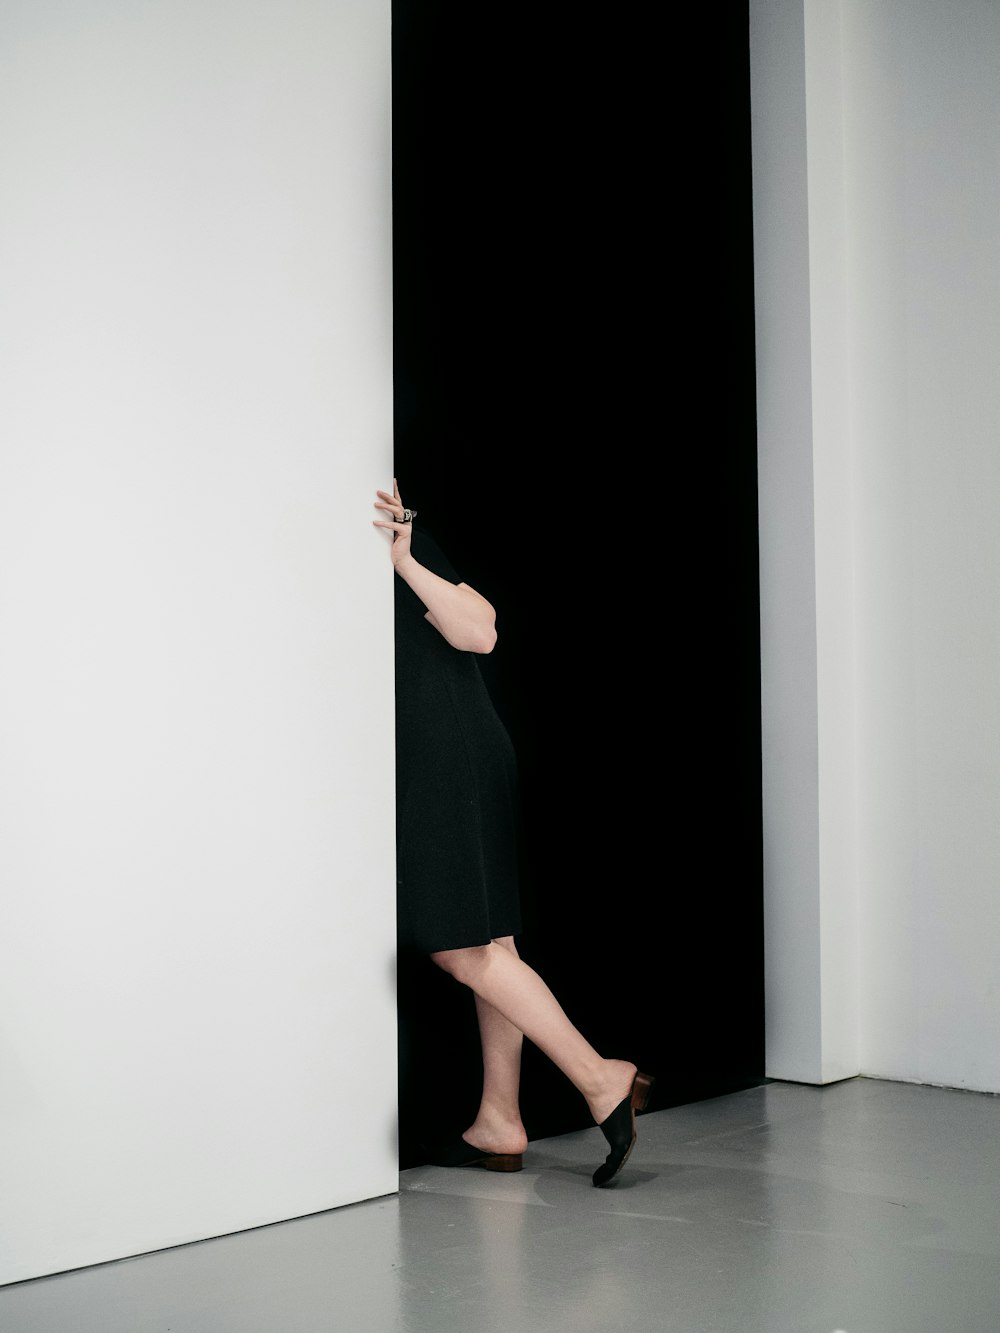 Femme debout se faufilant sur la porte à l’intérieur de la pièce peinte en blanc